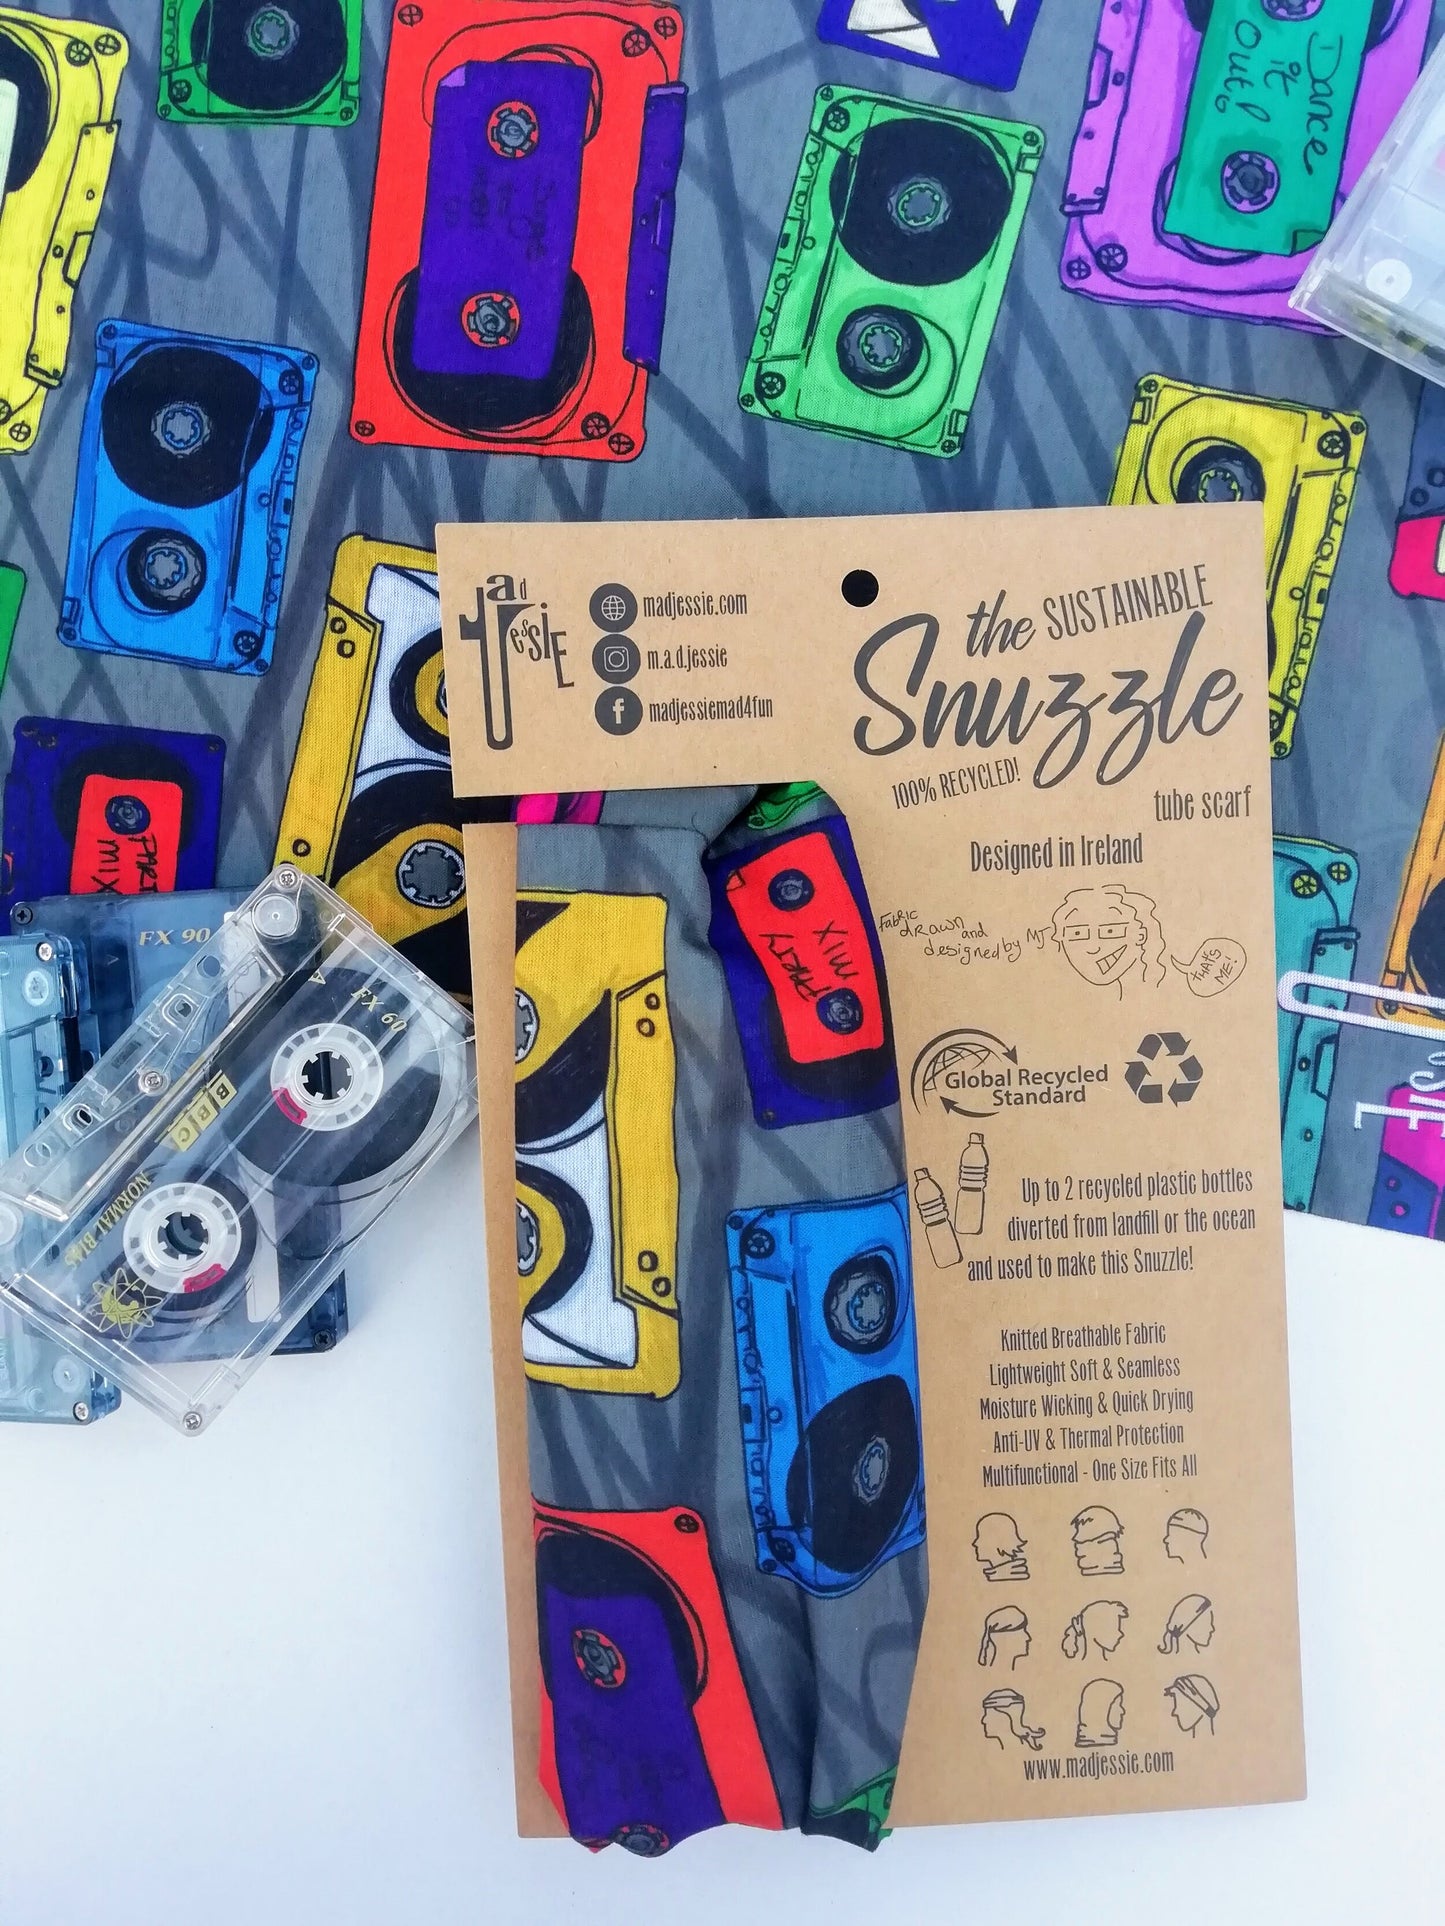 Mix Tape Sustainable Snuzzle